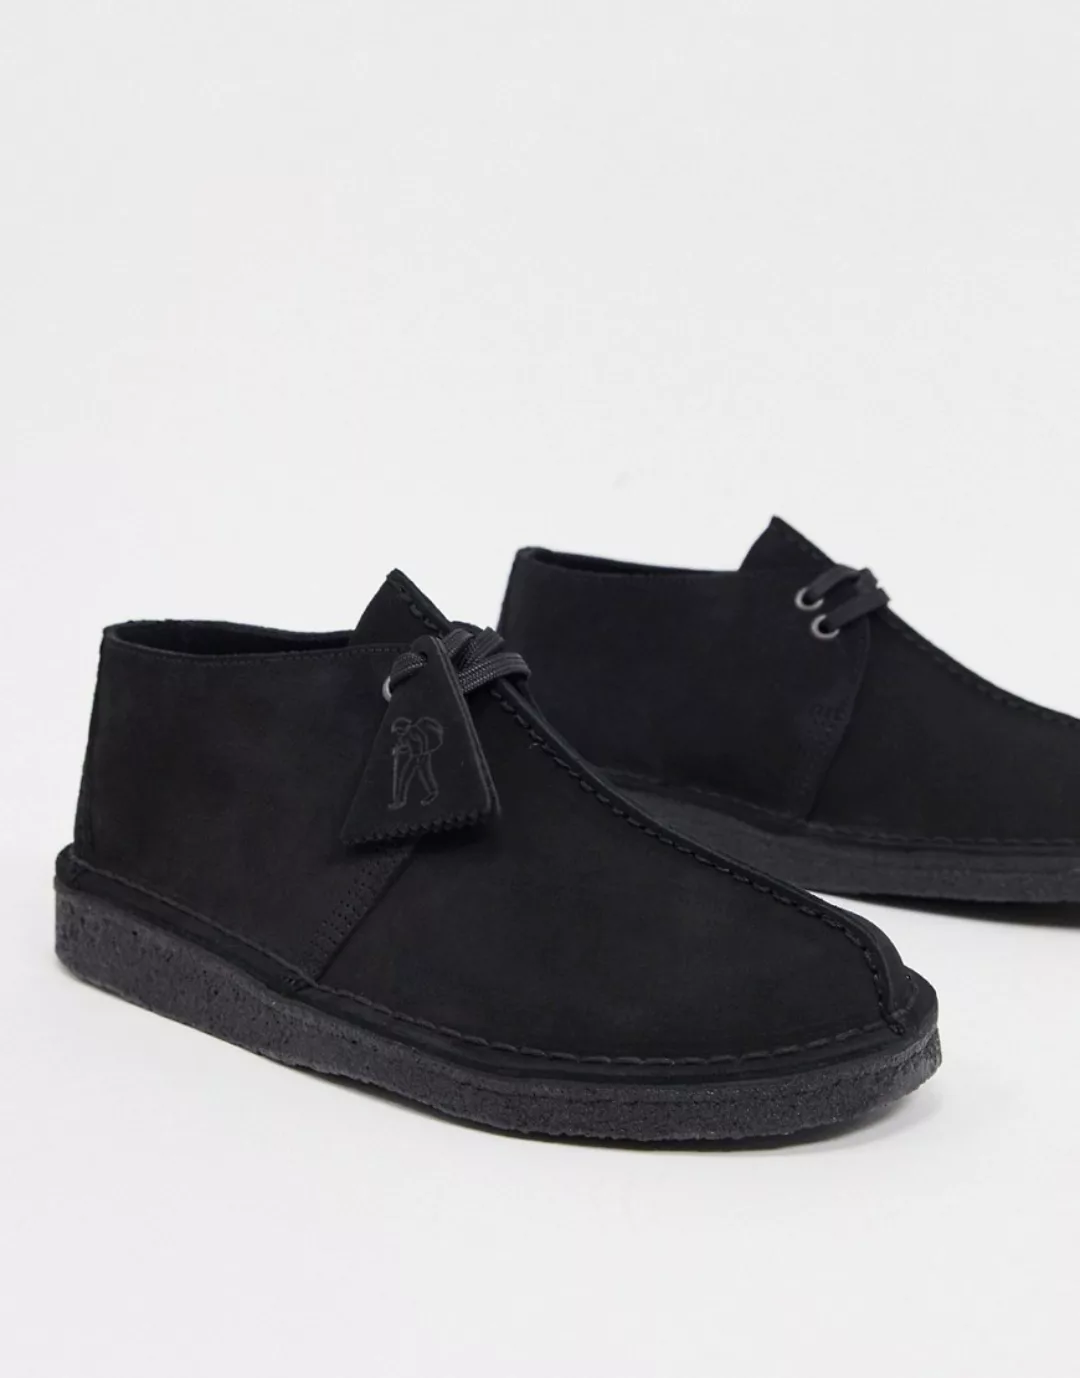 Clarks Originals – Desert Trek – Schuhe aus schwarzem Wildleder günstig online kaufen